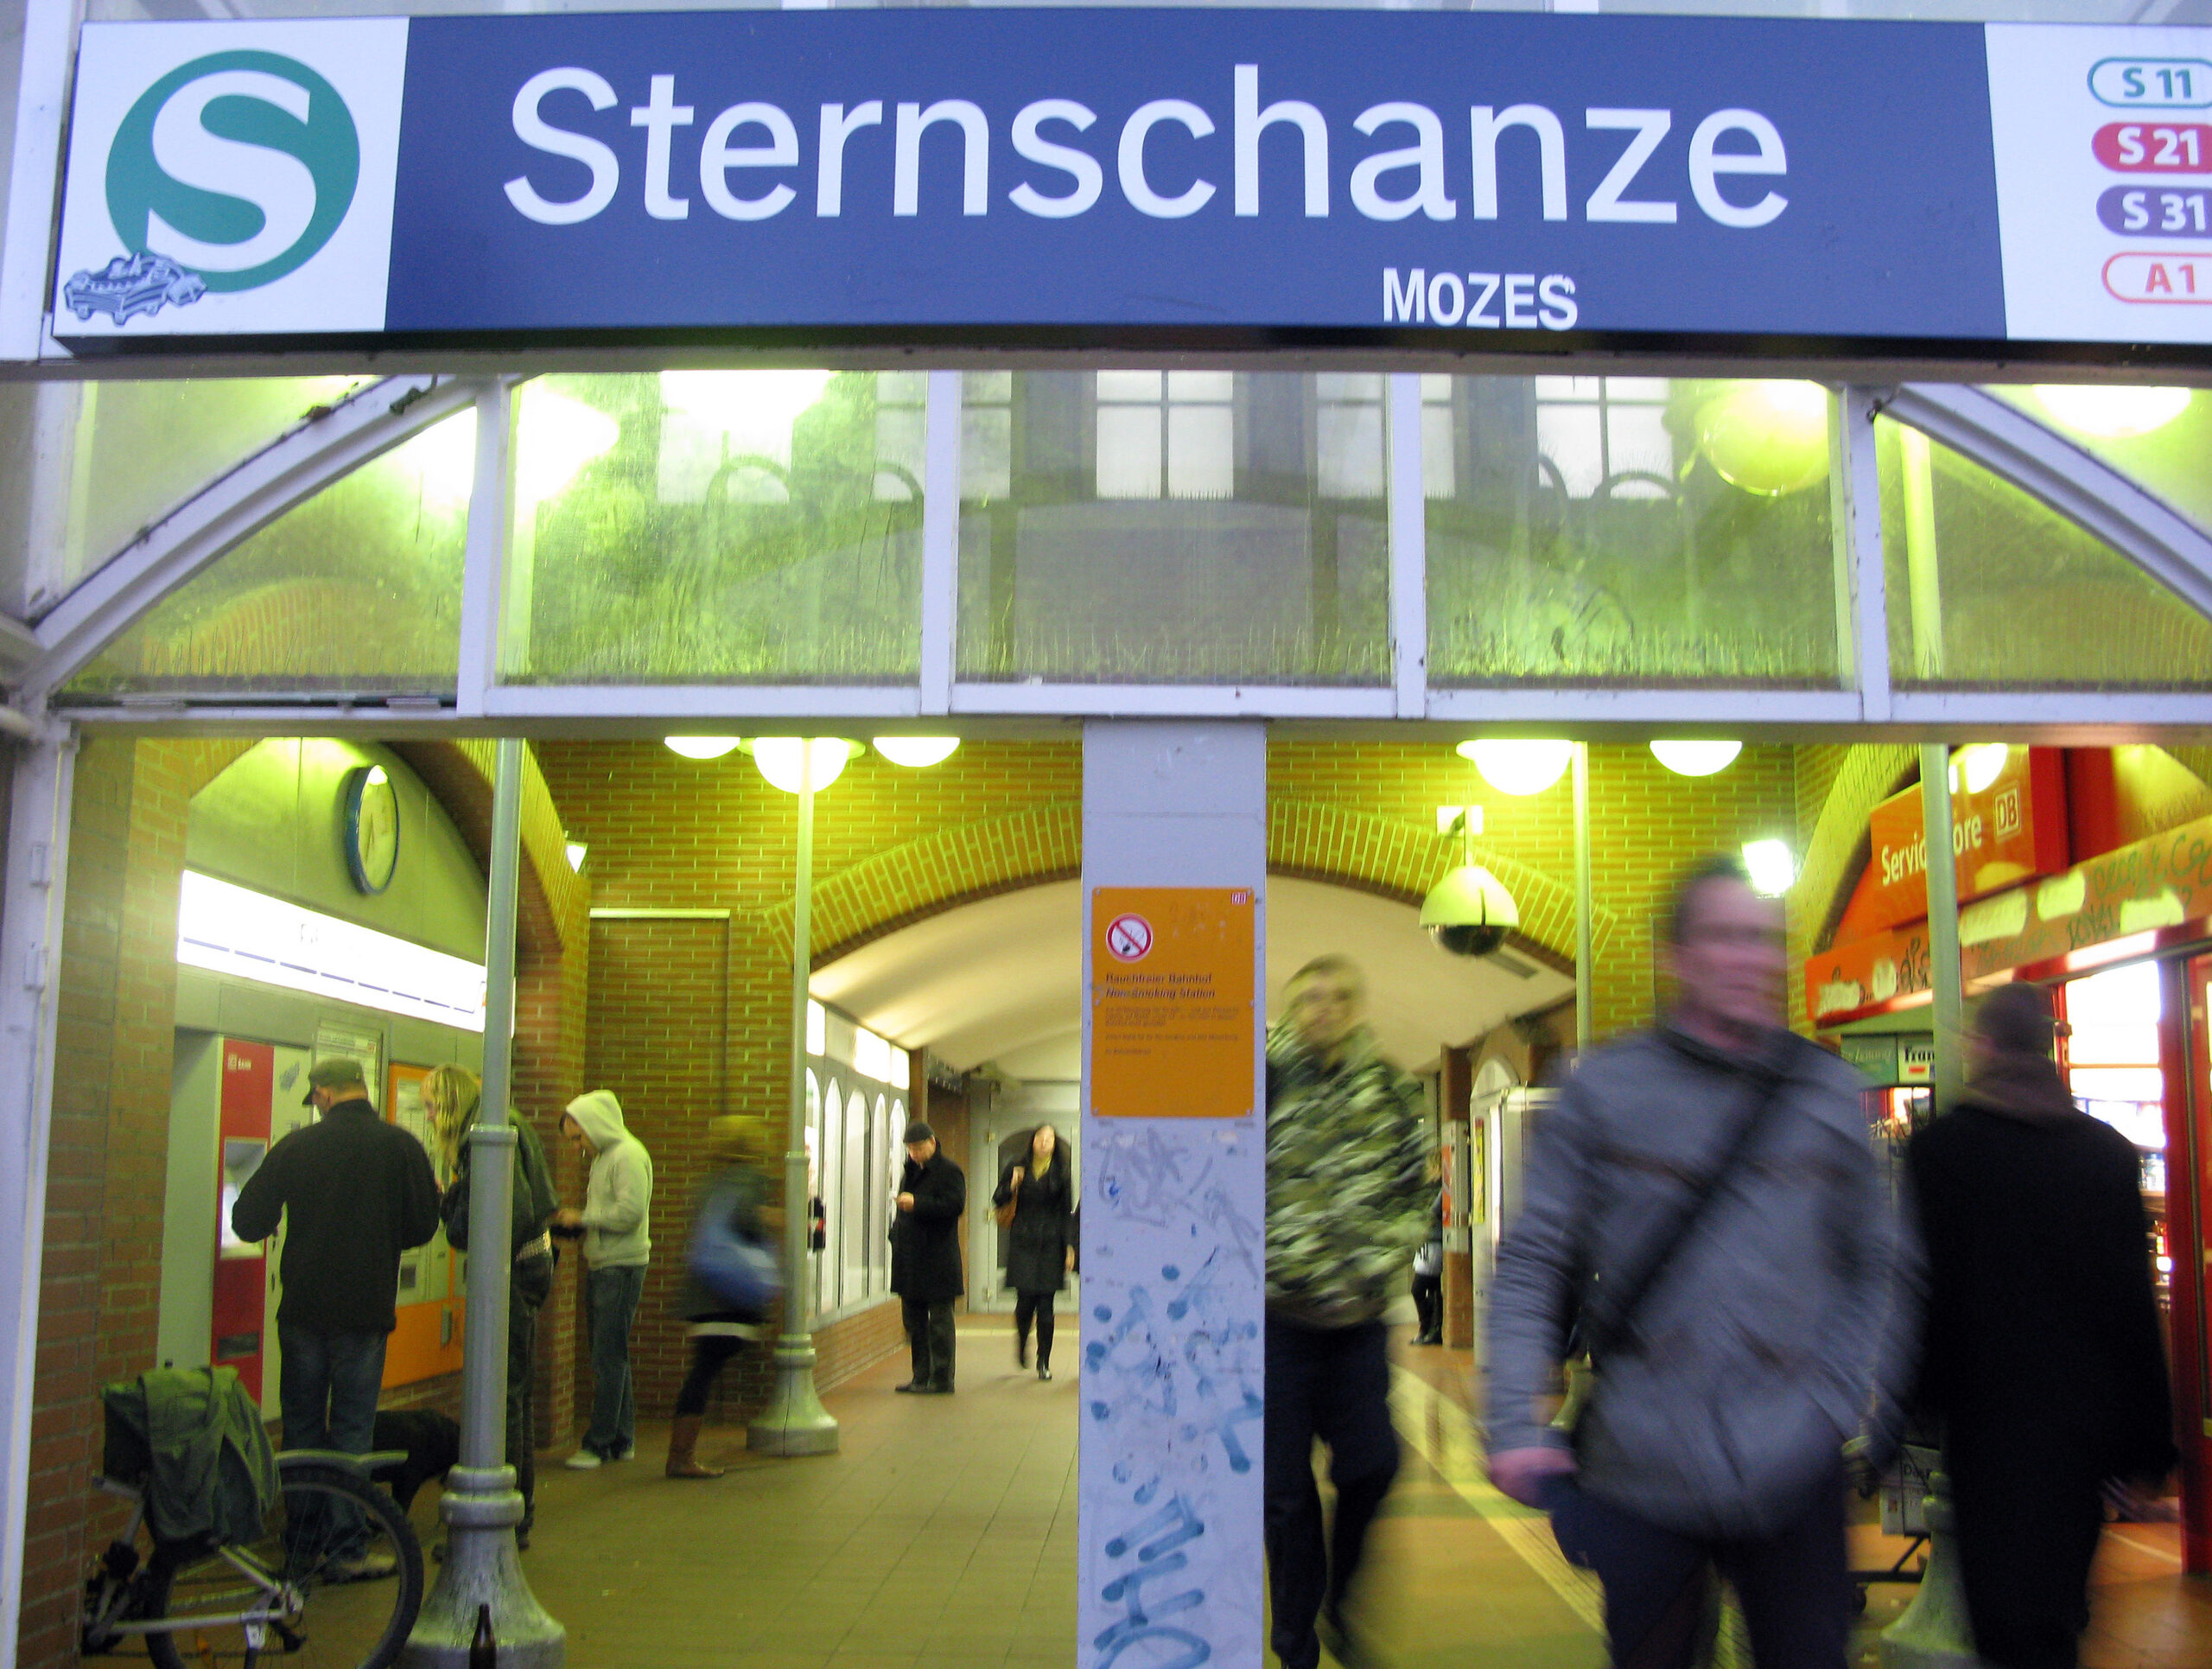 Teenie in S-Bahn unsittlich berührt – Bundespolizei nimmt Tatverdächtigen fest